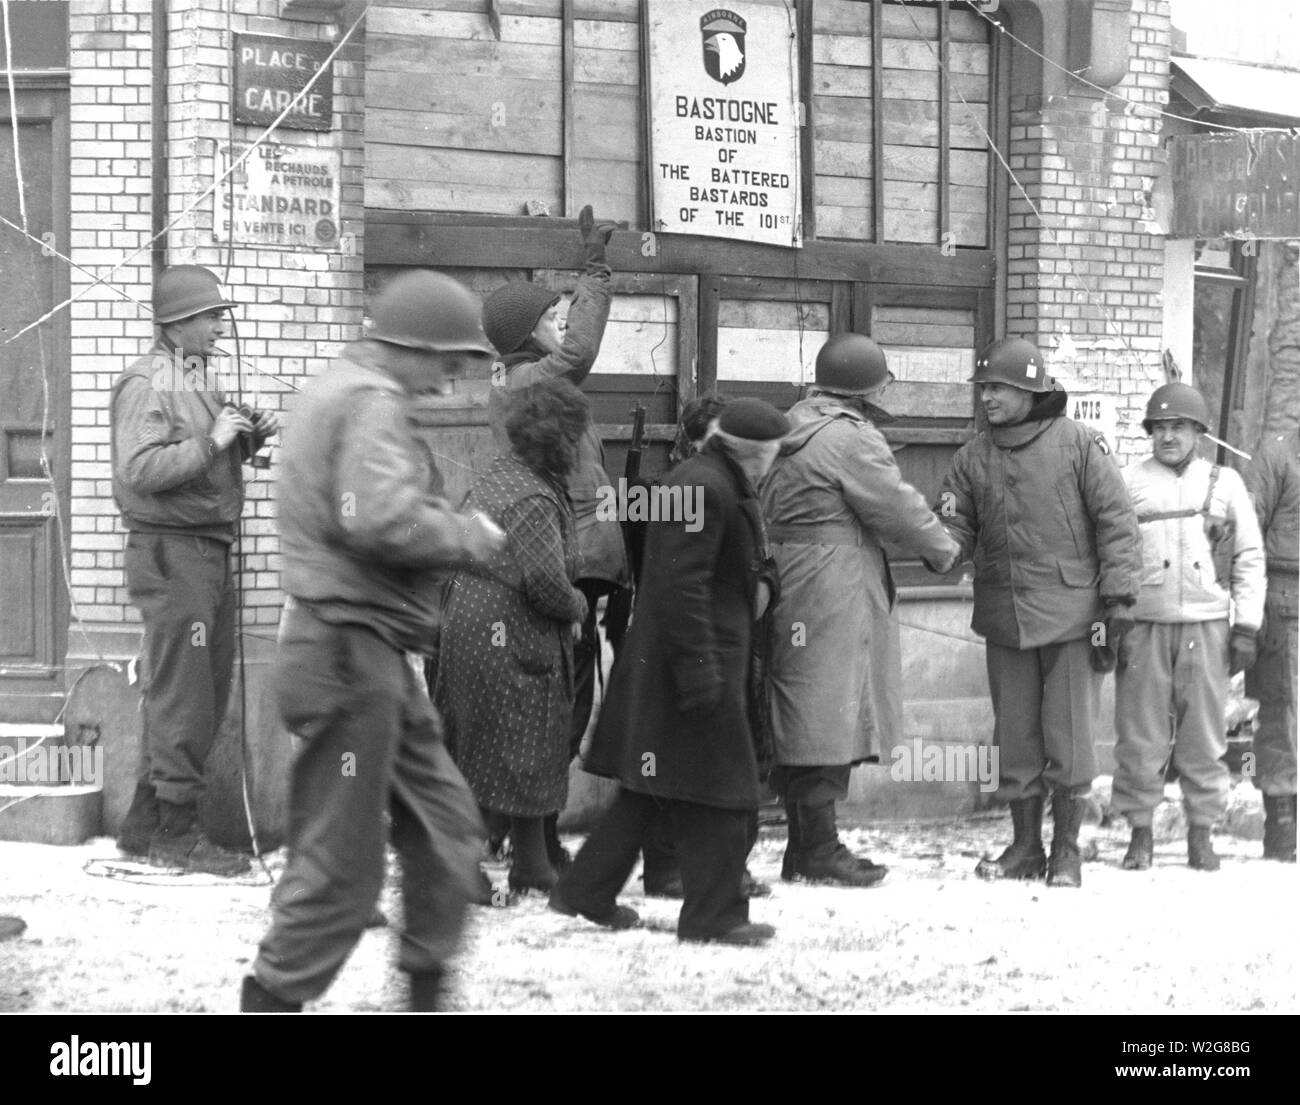 Originale Bildunterschrift: Generäle der Luftlandedivision review die 101 Div. In der Stadt Bastogne, Belgien. Sie sind vor der "Bastion der zerschlagenen Bastarde der 101 st." 1/18/45. Bastogne, Belgien. Stockfoto